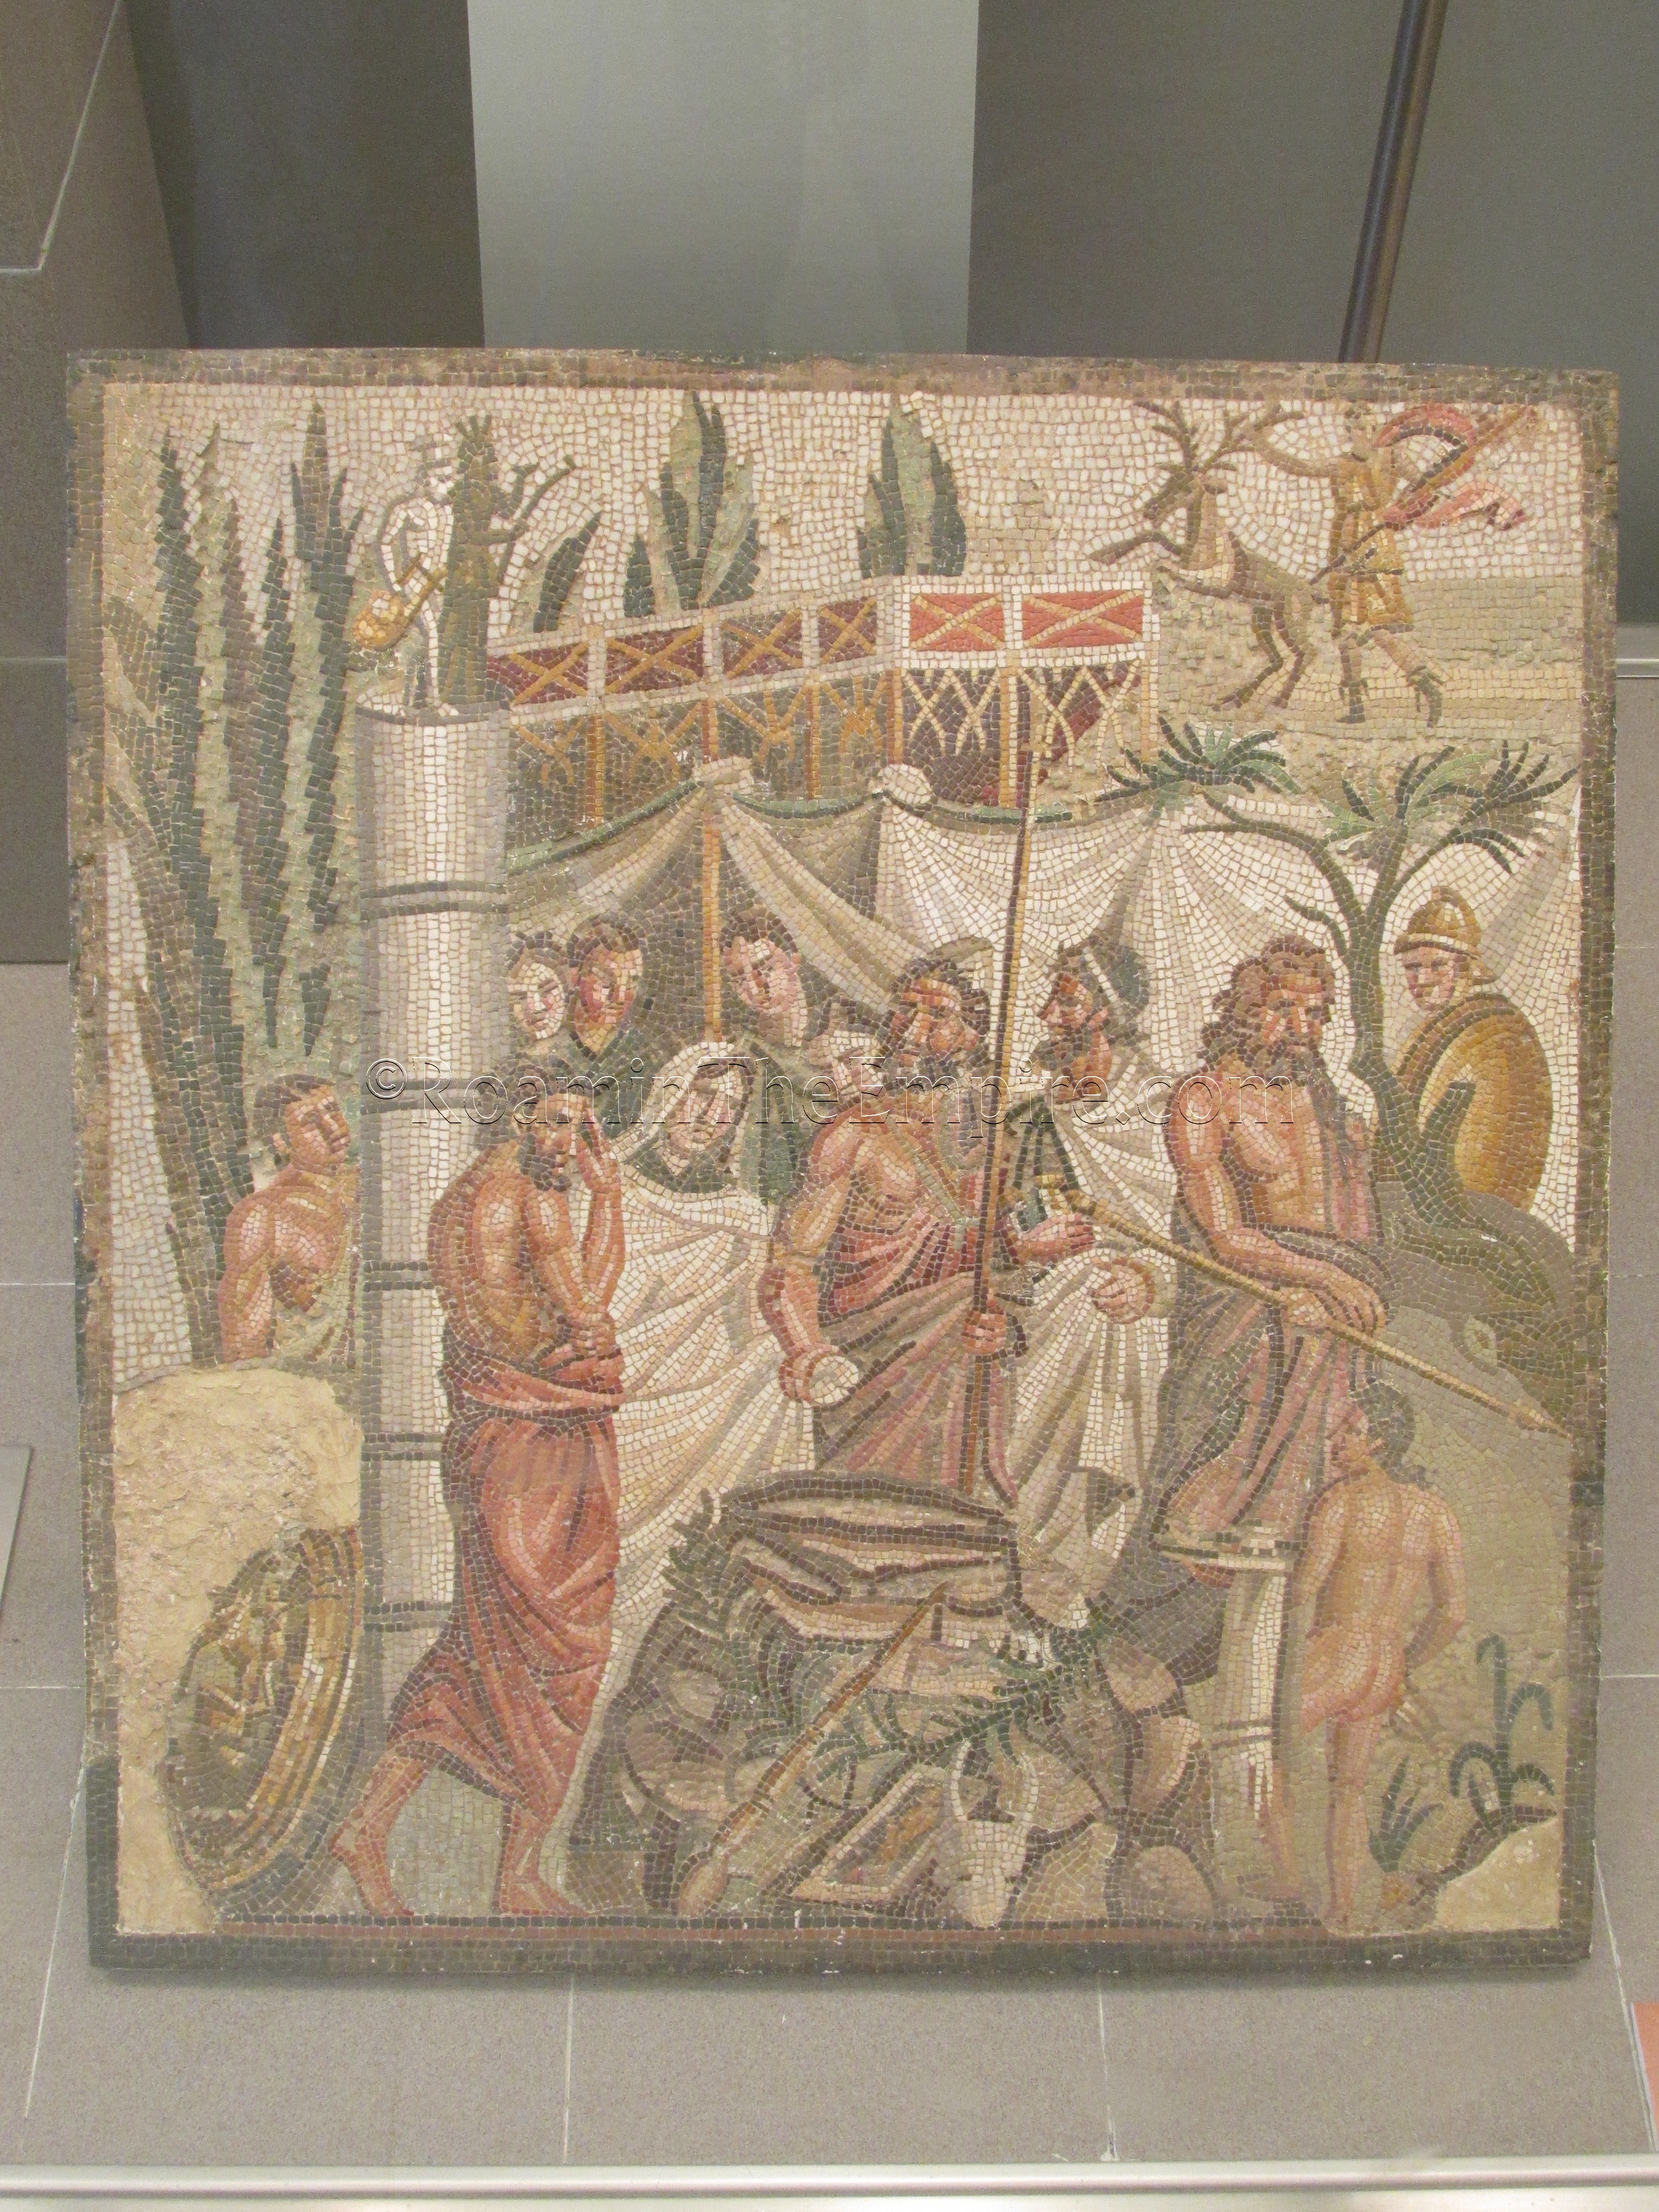 Mosaic of the sacrifice of Iphigenia in Aulis. Emporiae.